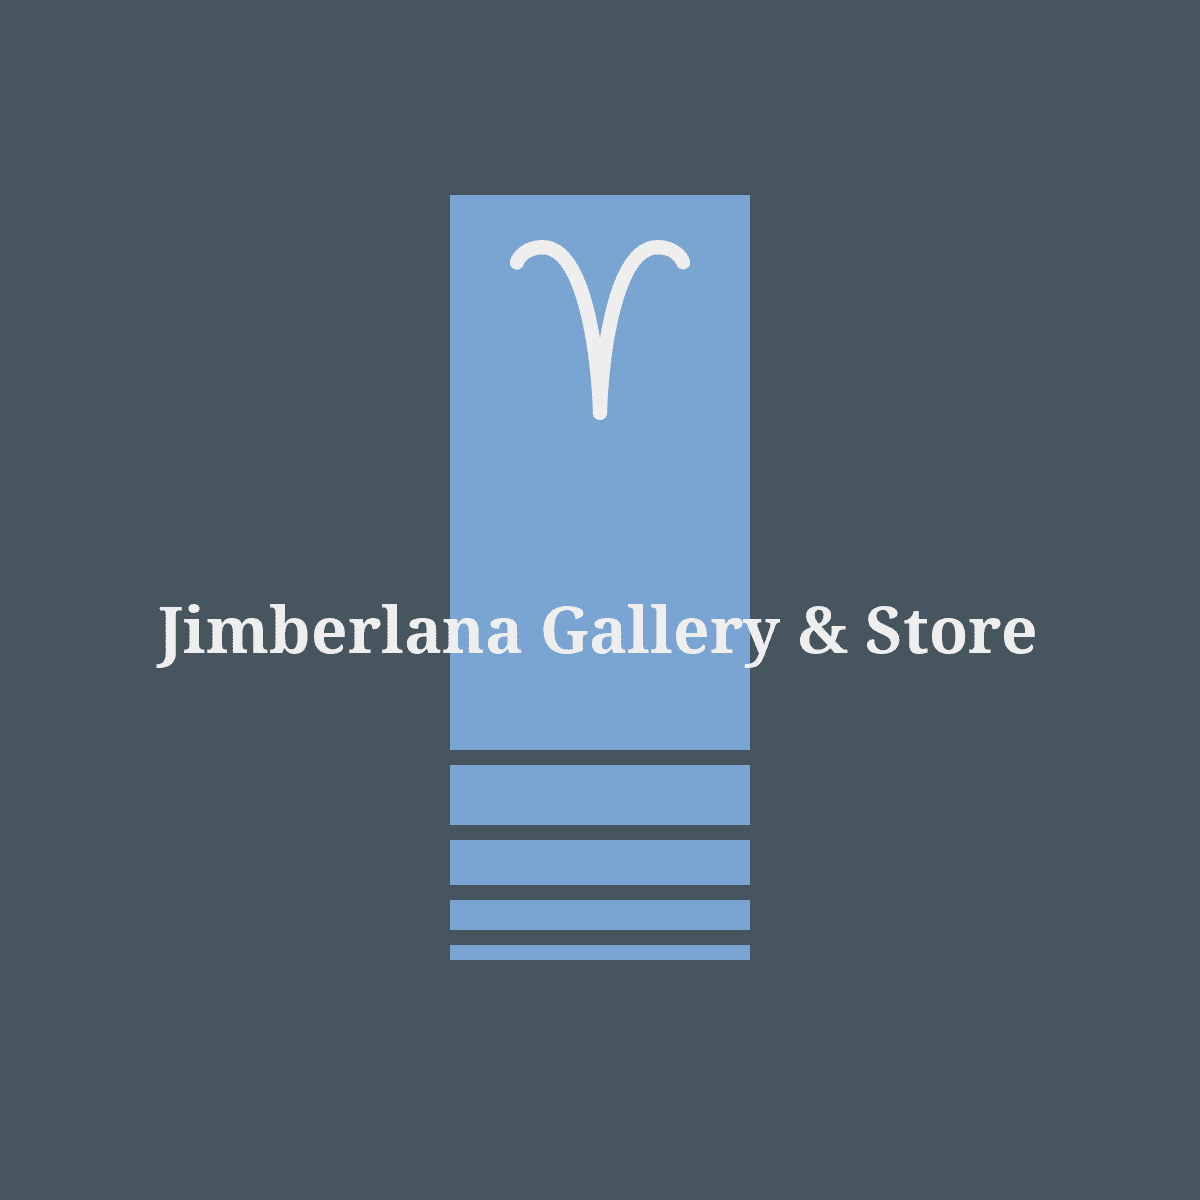 Jimberlana Gallery & Store